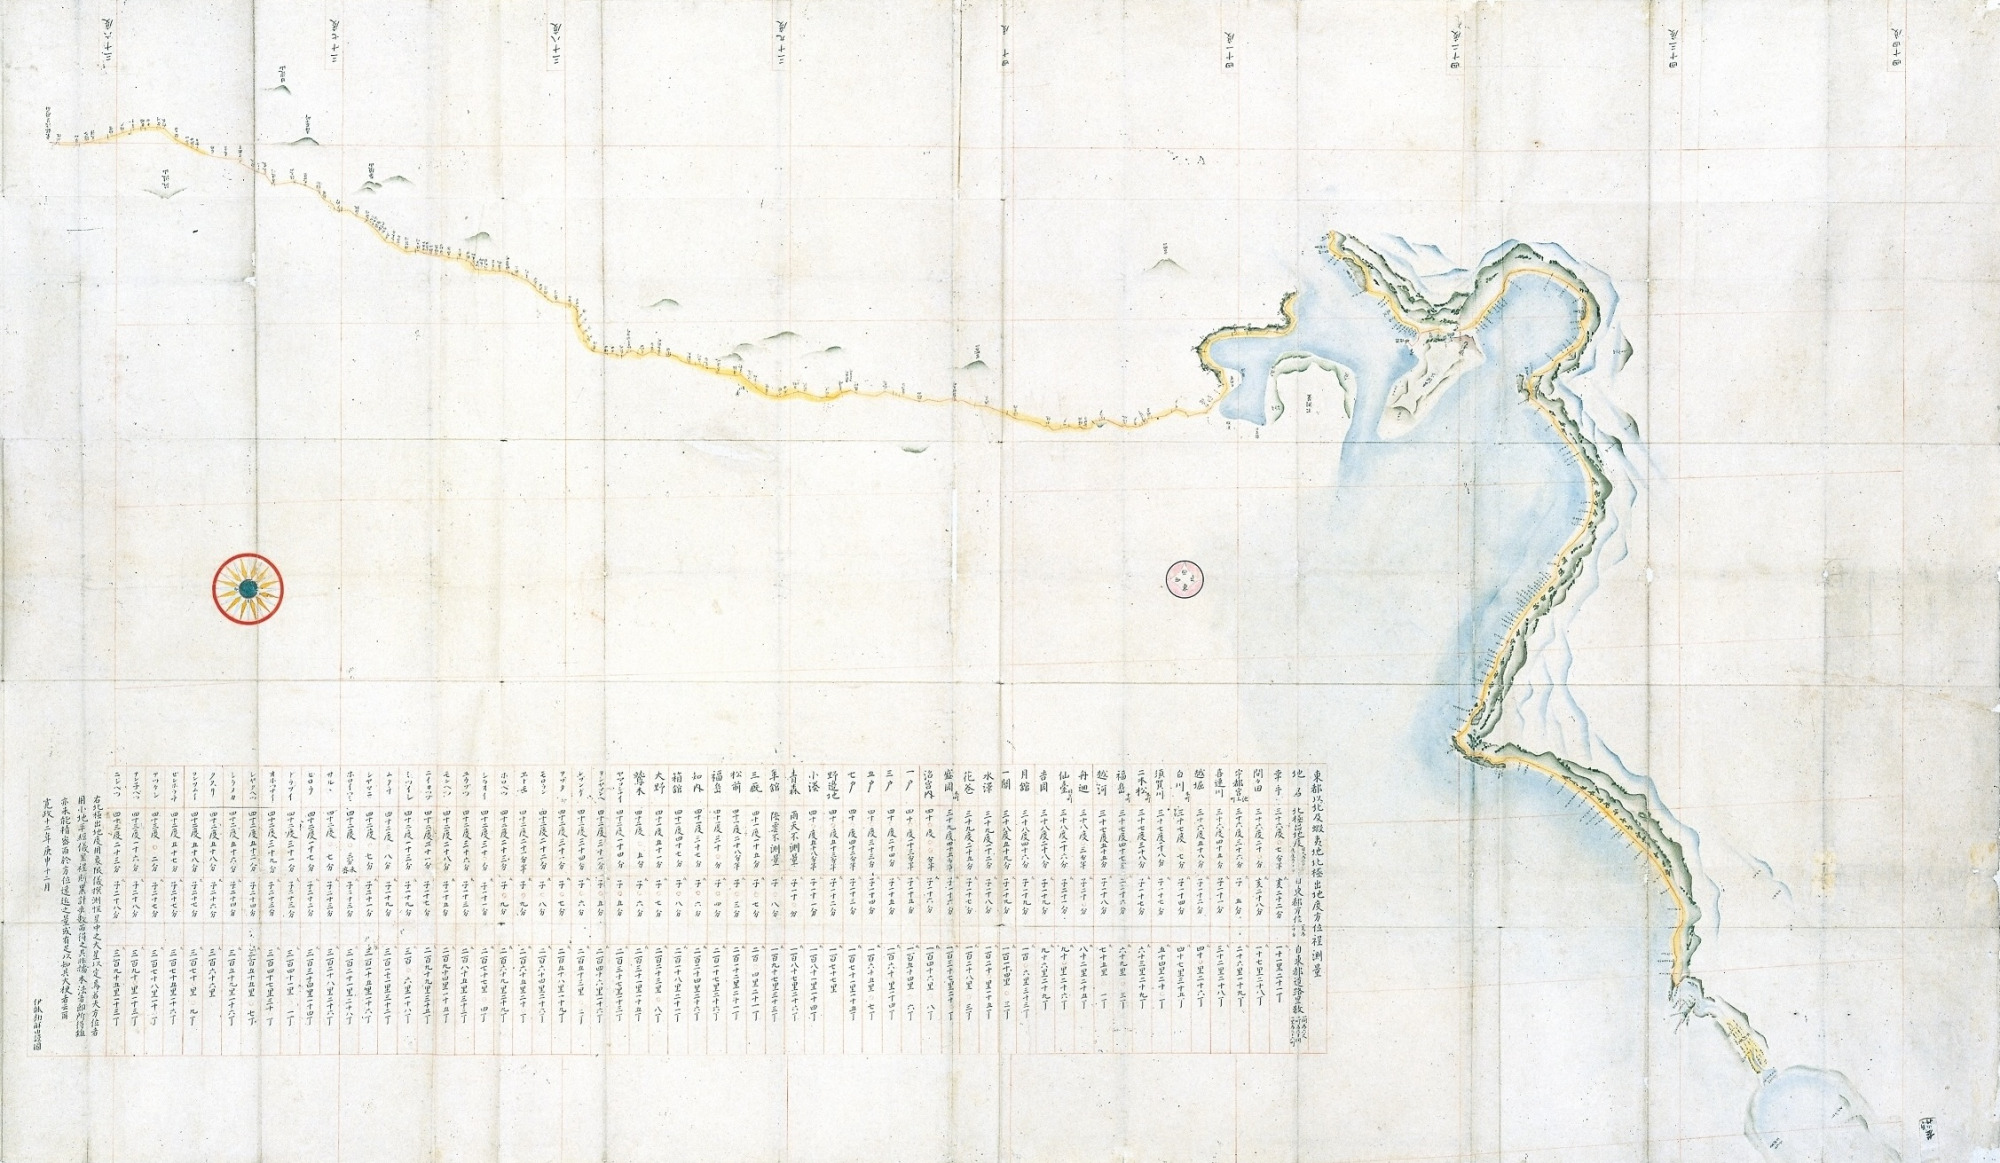 凡例に各地の緯度情報が記載されている蝦夷地の地図（千葉県香取市 伊能忠敬記念館所蔵）